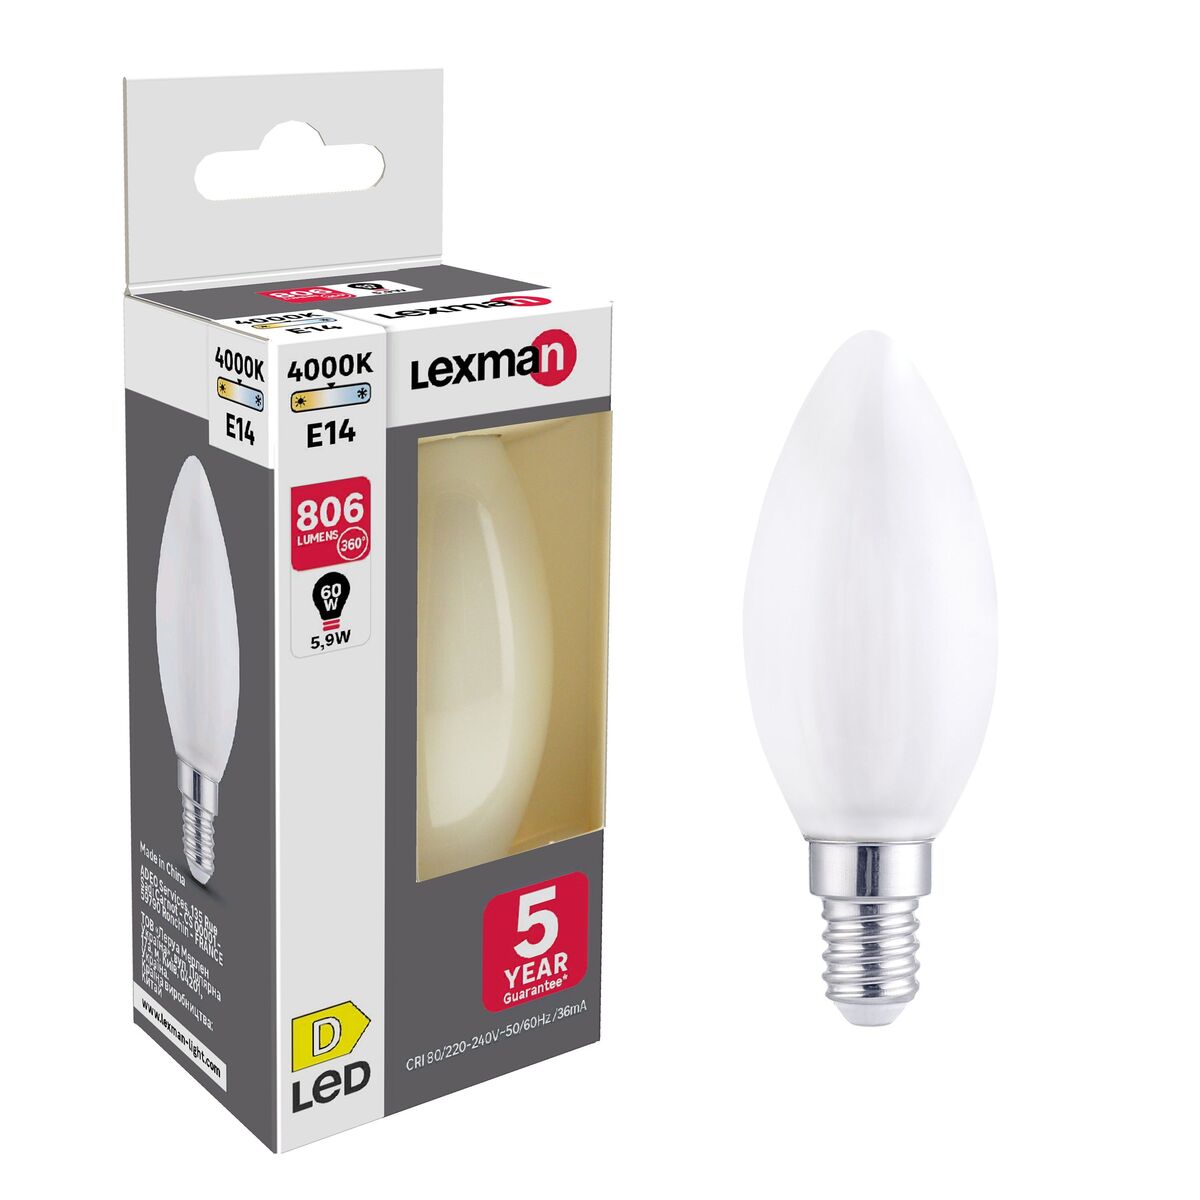 Żarówka LED E14 5,9 W = 60 W 806 lm Neutralna biel Lexman